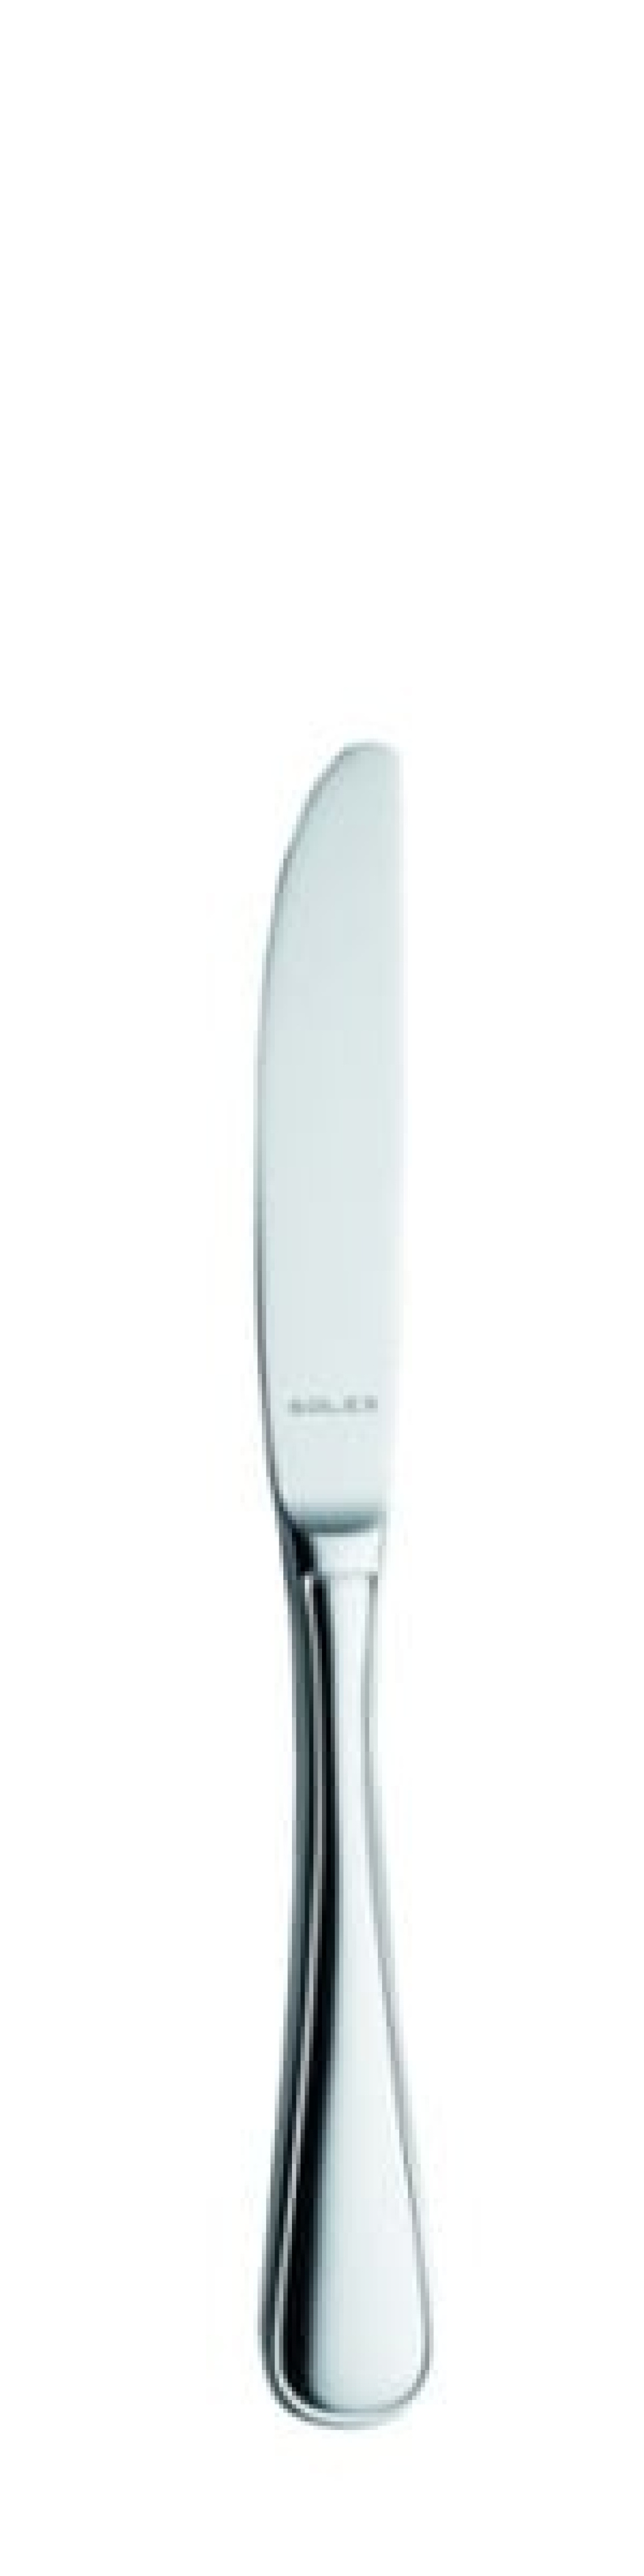 Nóż deserowy Selina 211 mm - Solex w grupie Nakrycie stołu / Sztućce / Noże w The Kitchen Lab (1284-21523)